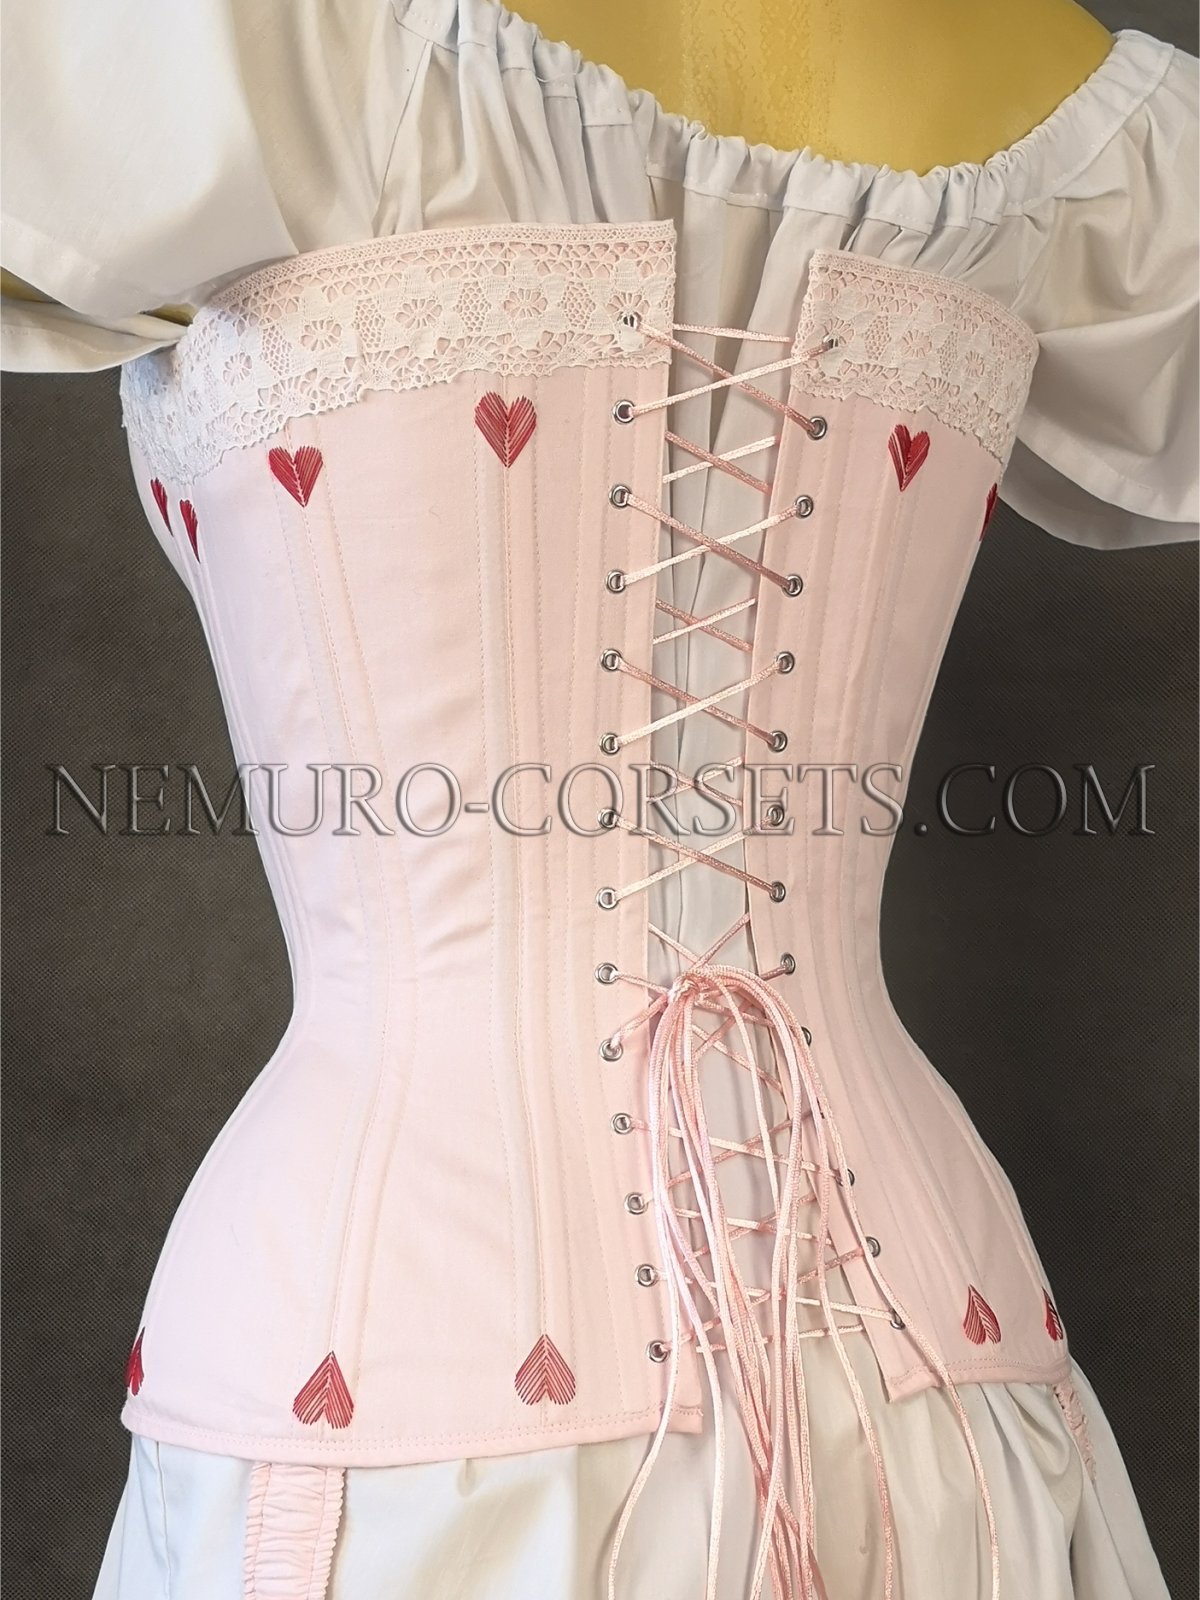 https://nemuro-corsets.com/cdn/shop/products/IMG_20220309_102814_1024x1024@2x.jpg?v=1672897289